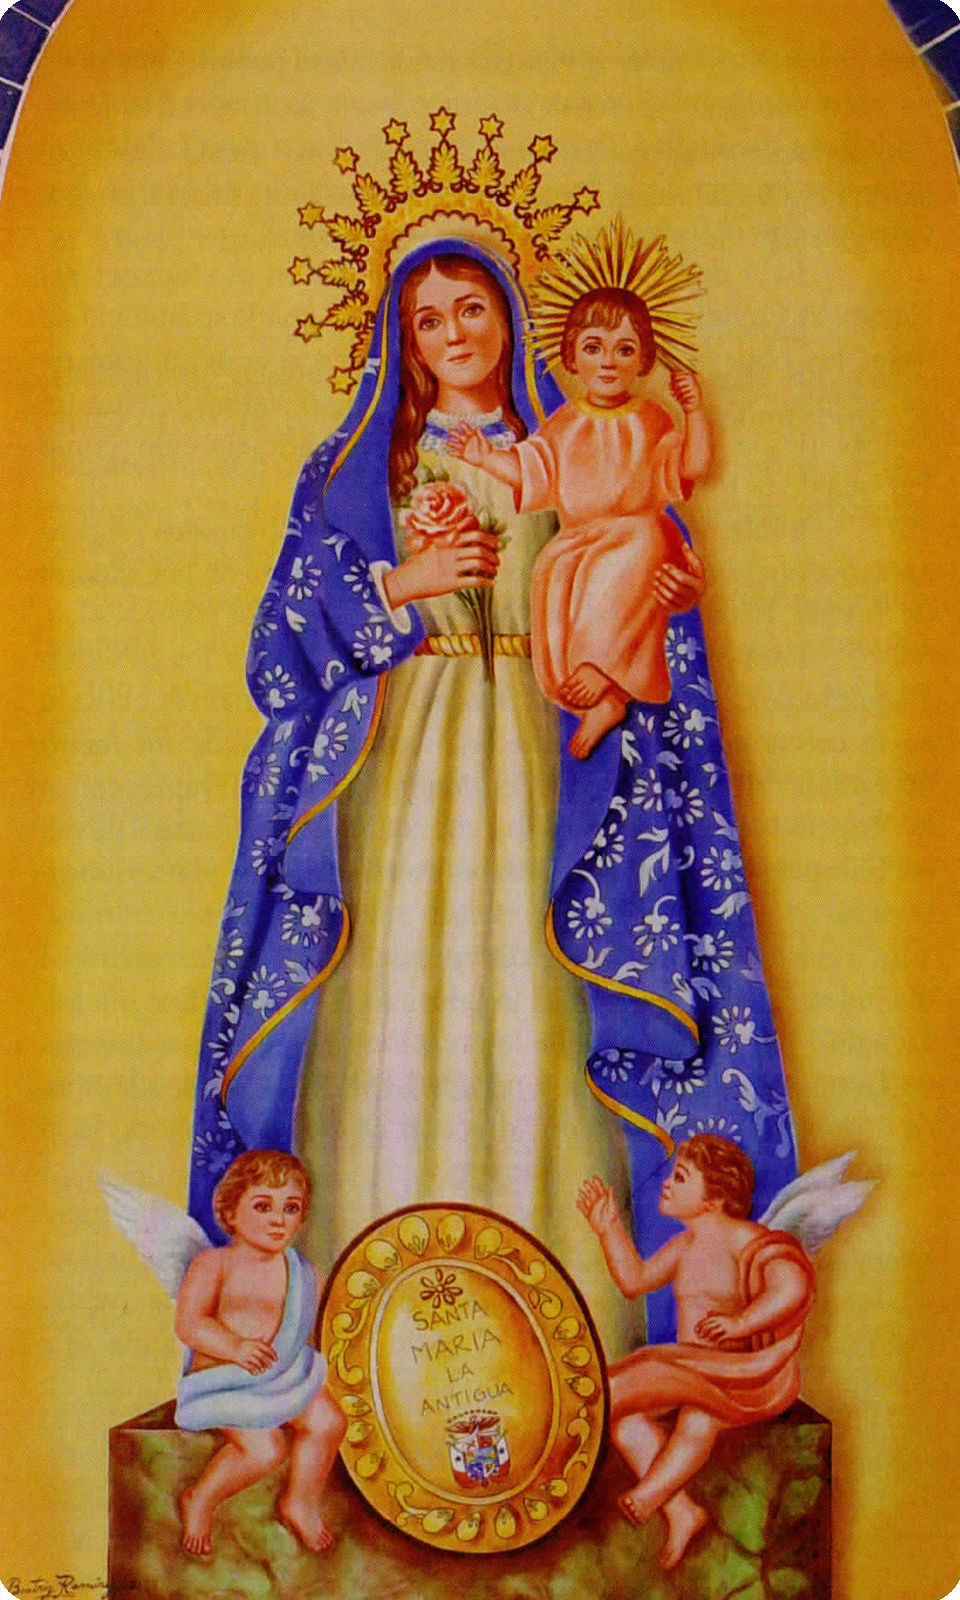 Nuestra Señora de la Antigua